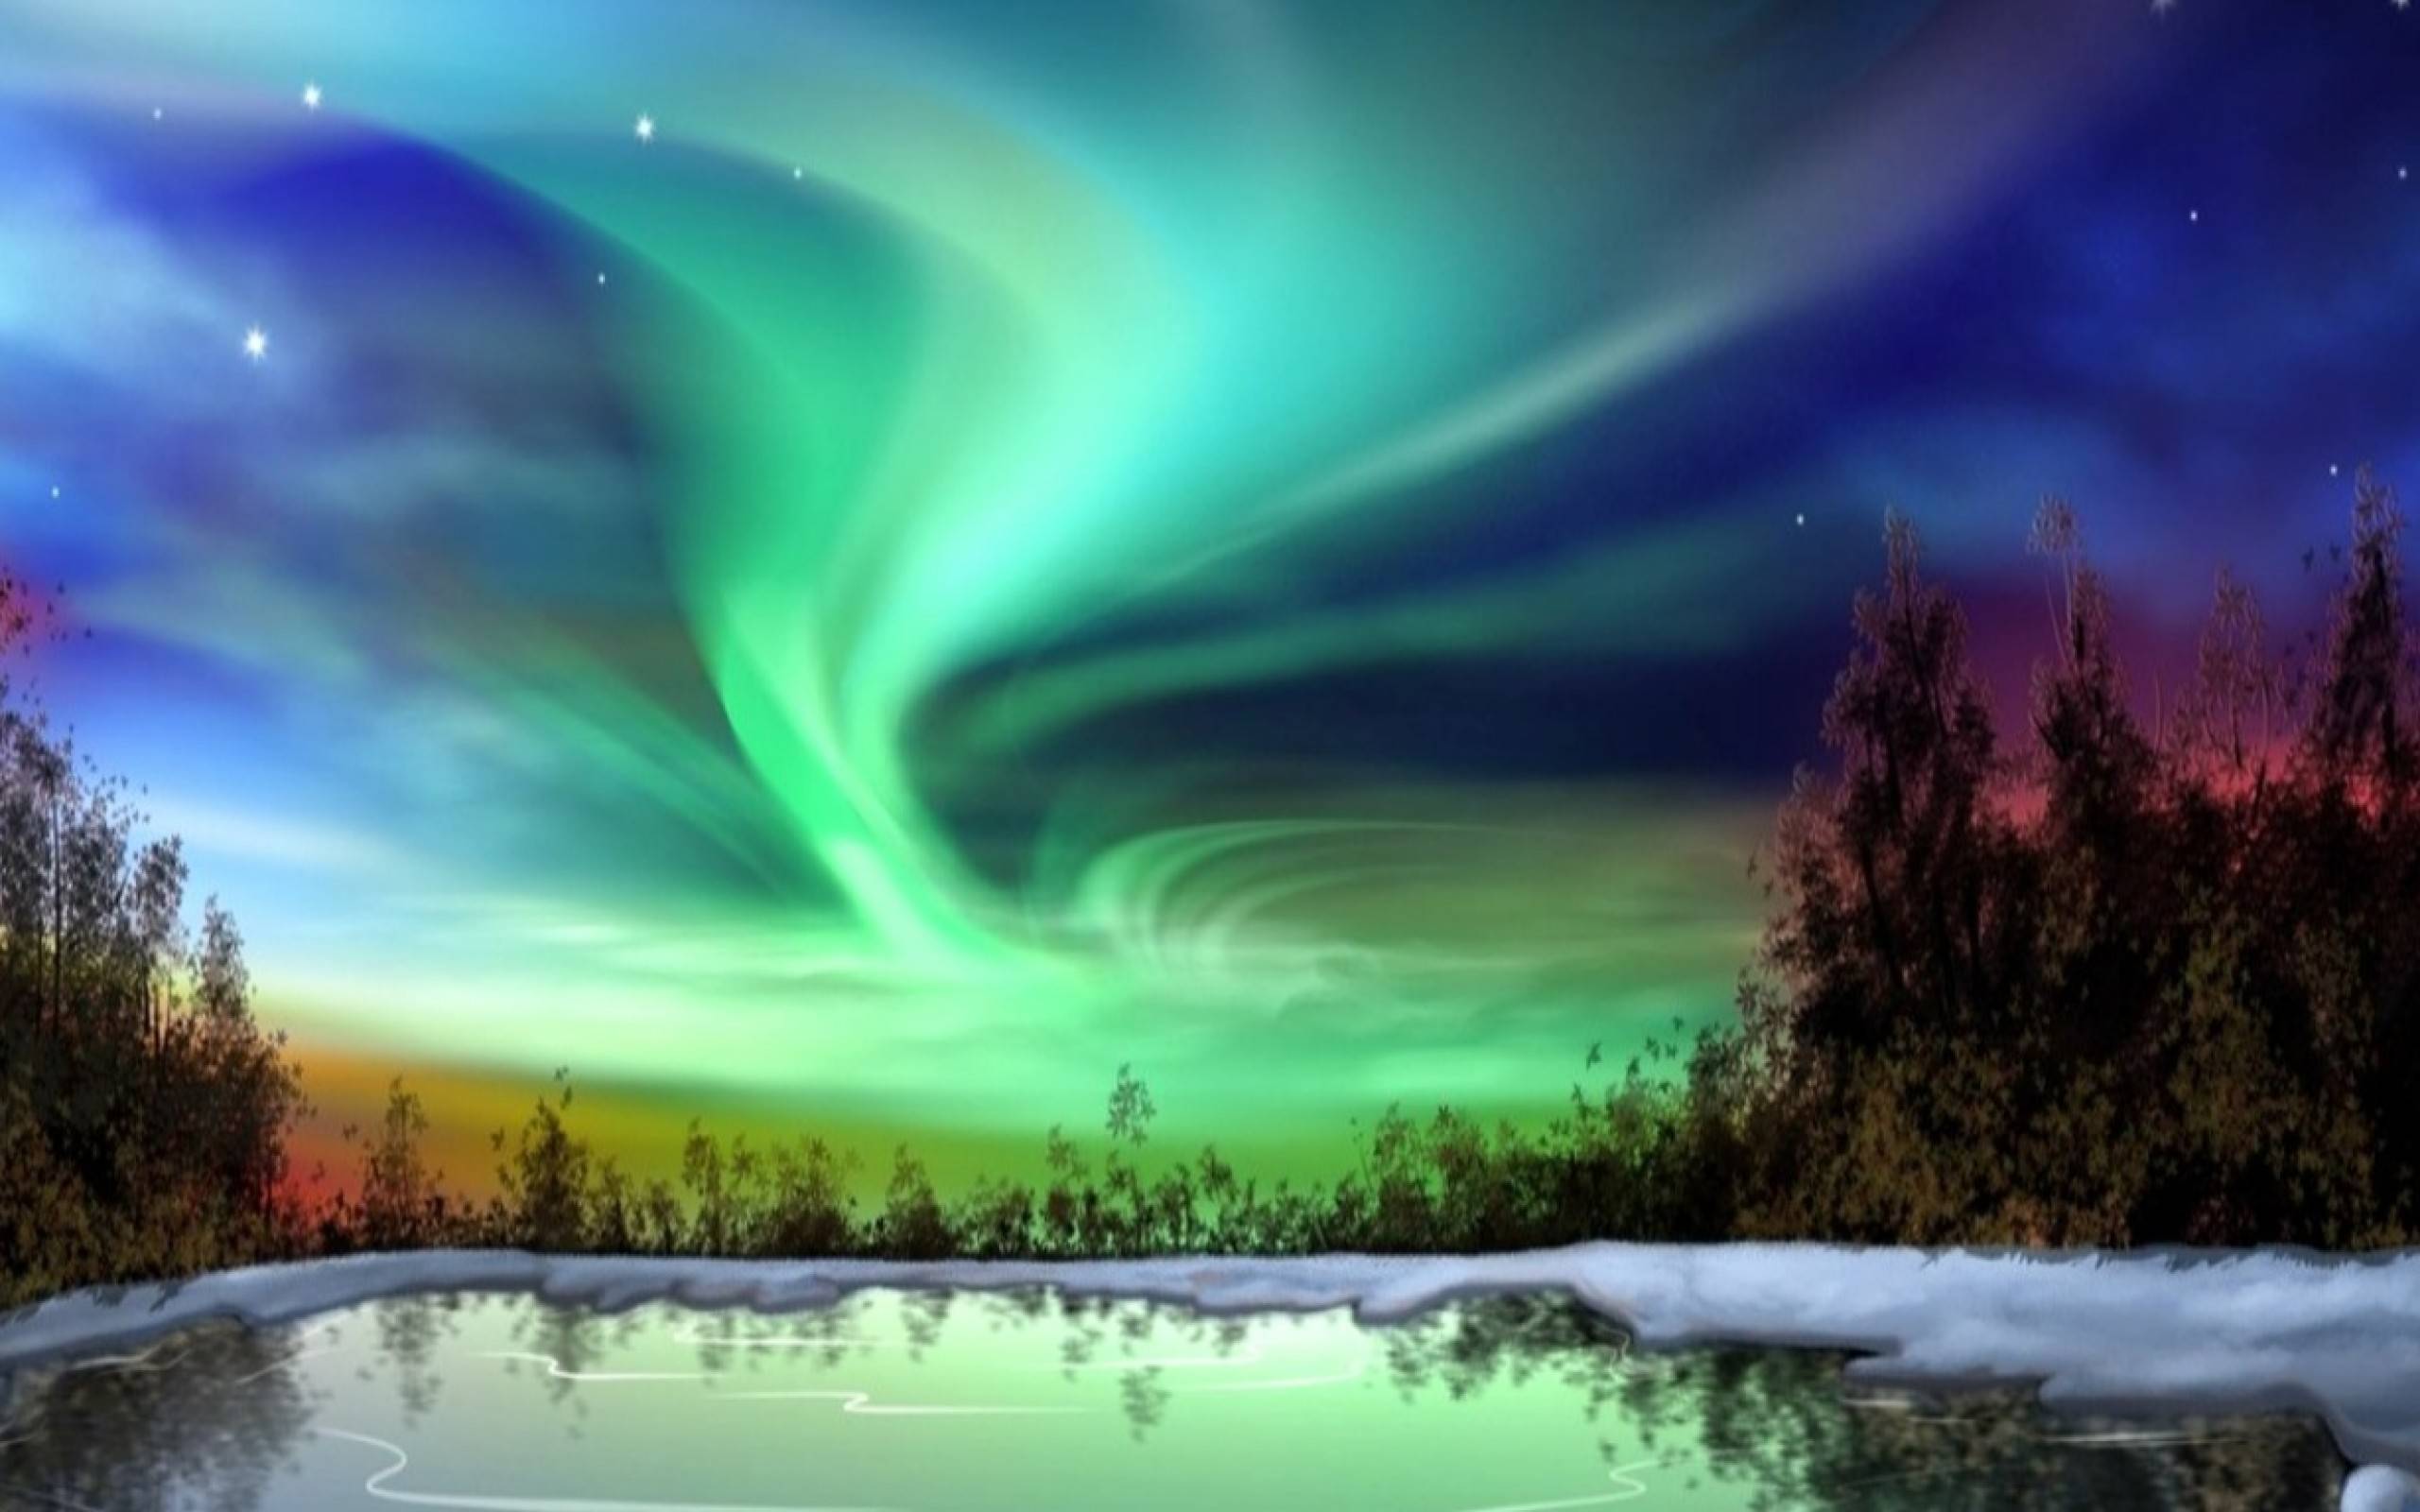 50+] Aurora Borealis Wallpaper Screensavers - WallpaperSafari